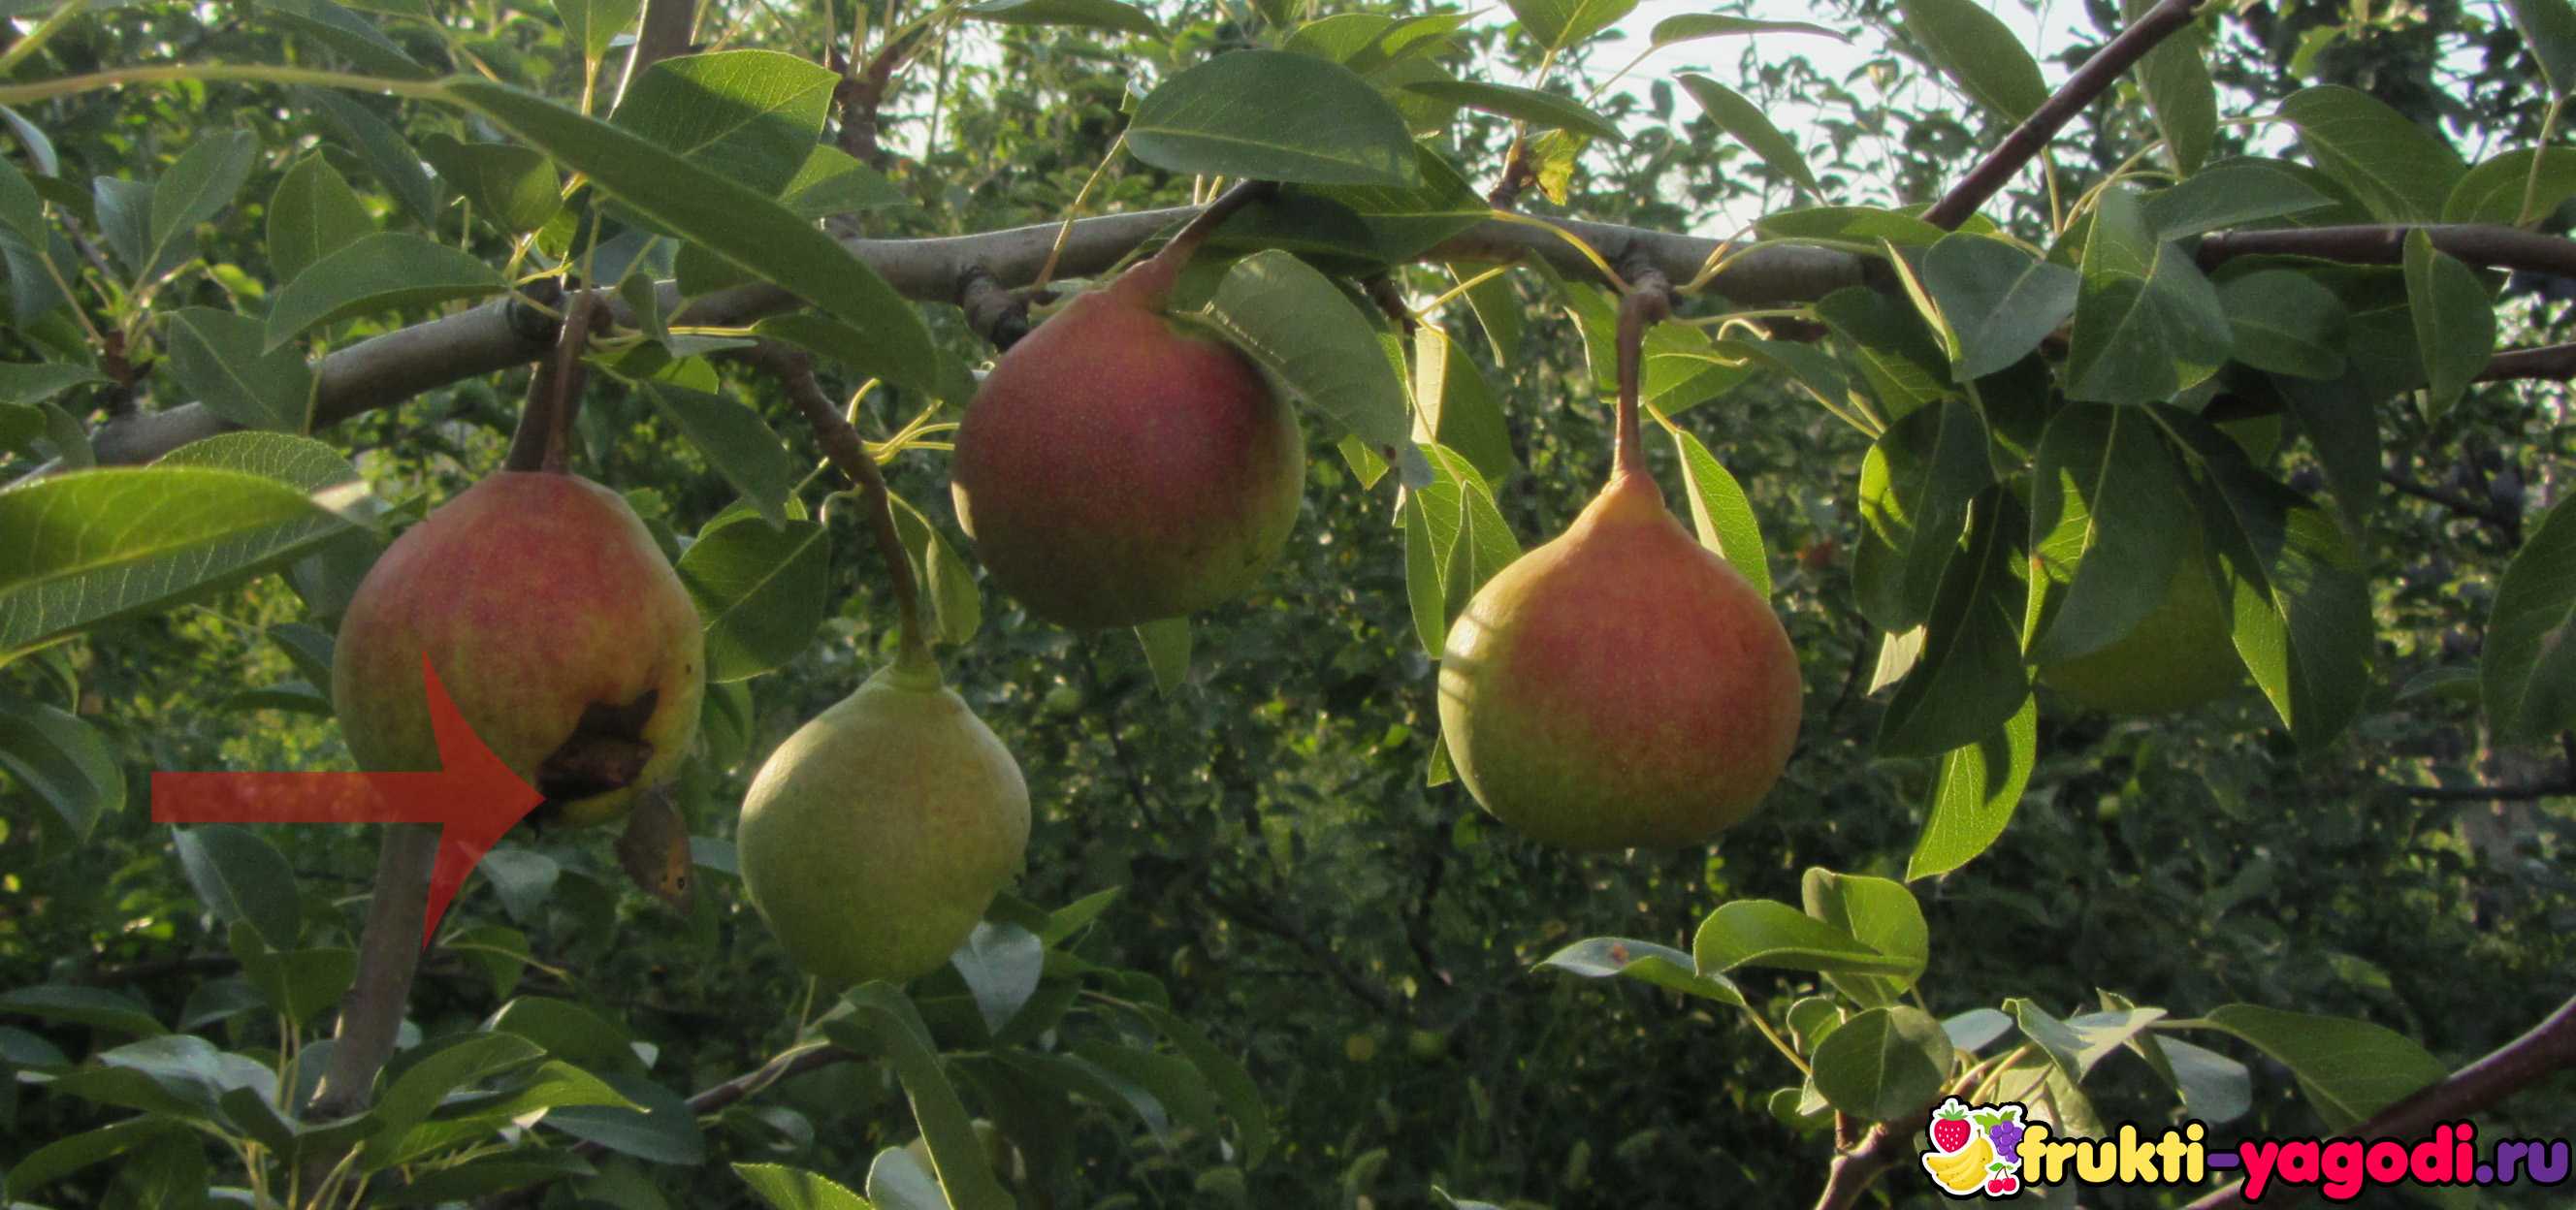 Почему чернеют плоды груши на дереве: что делать, как лечить